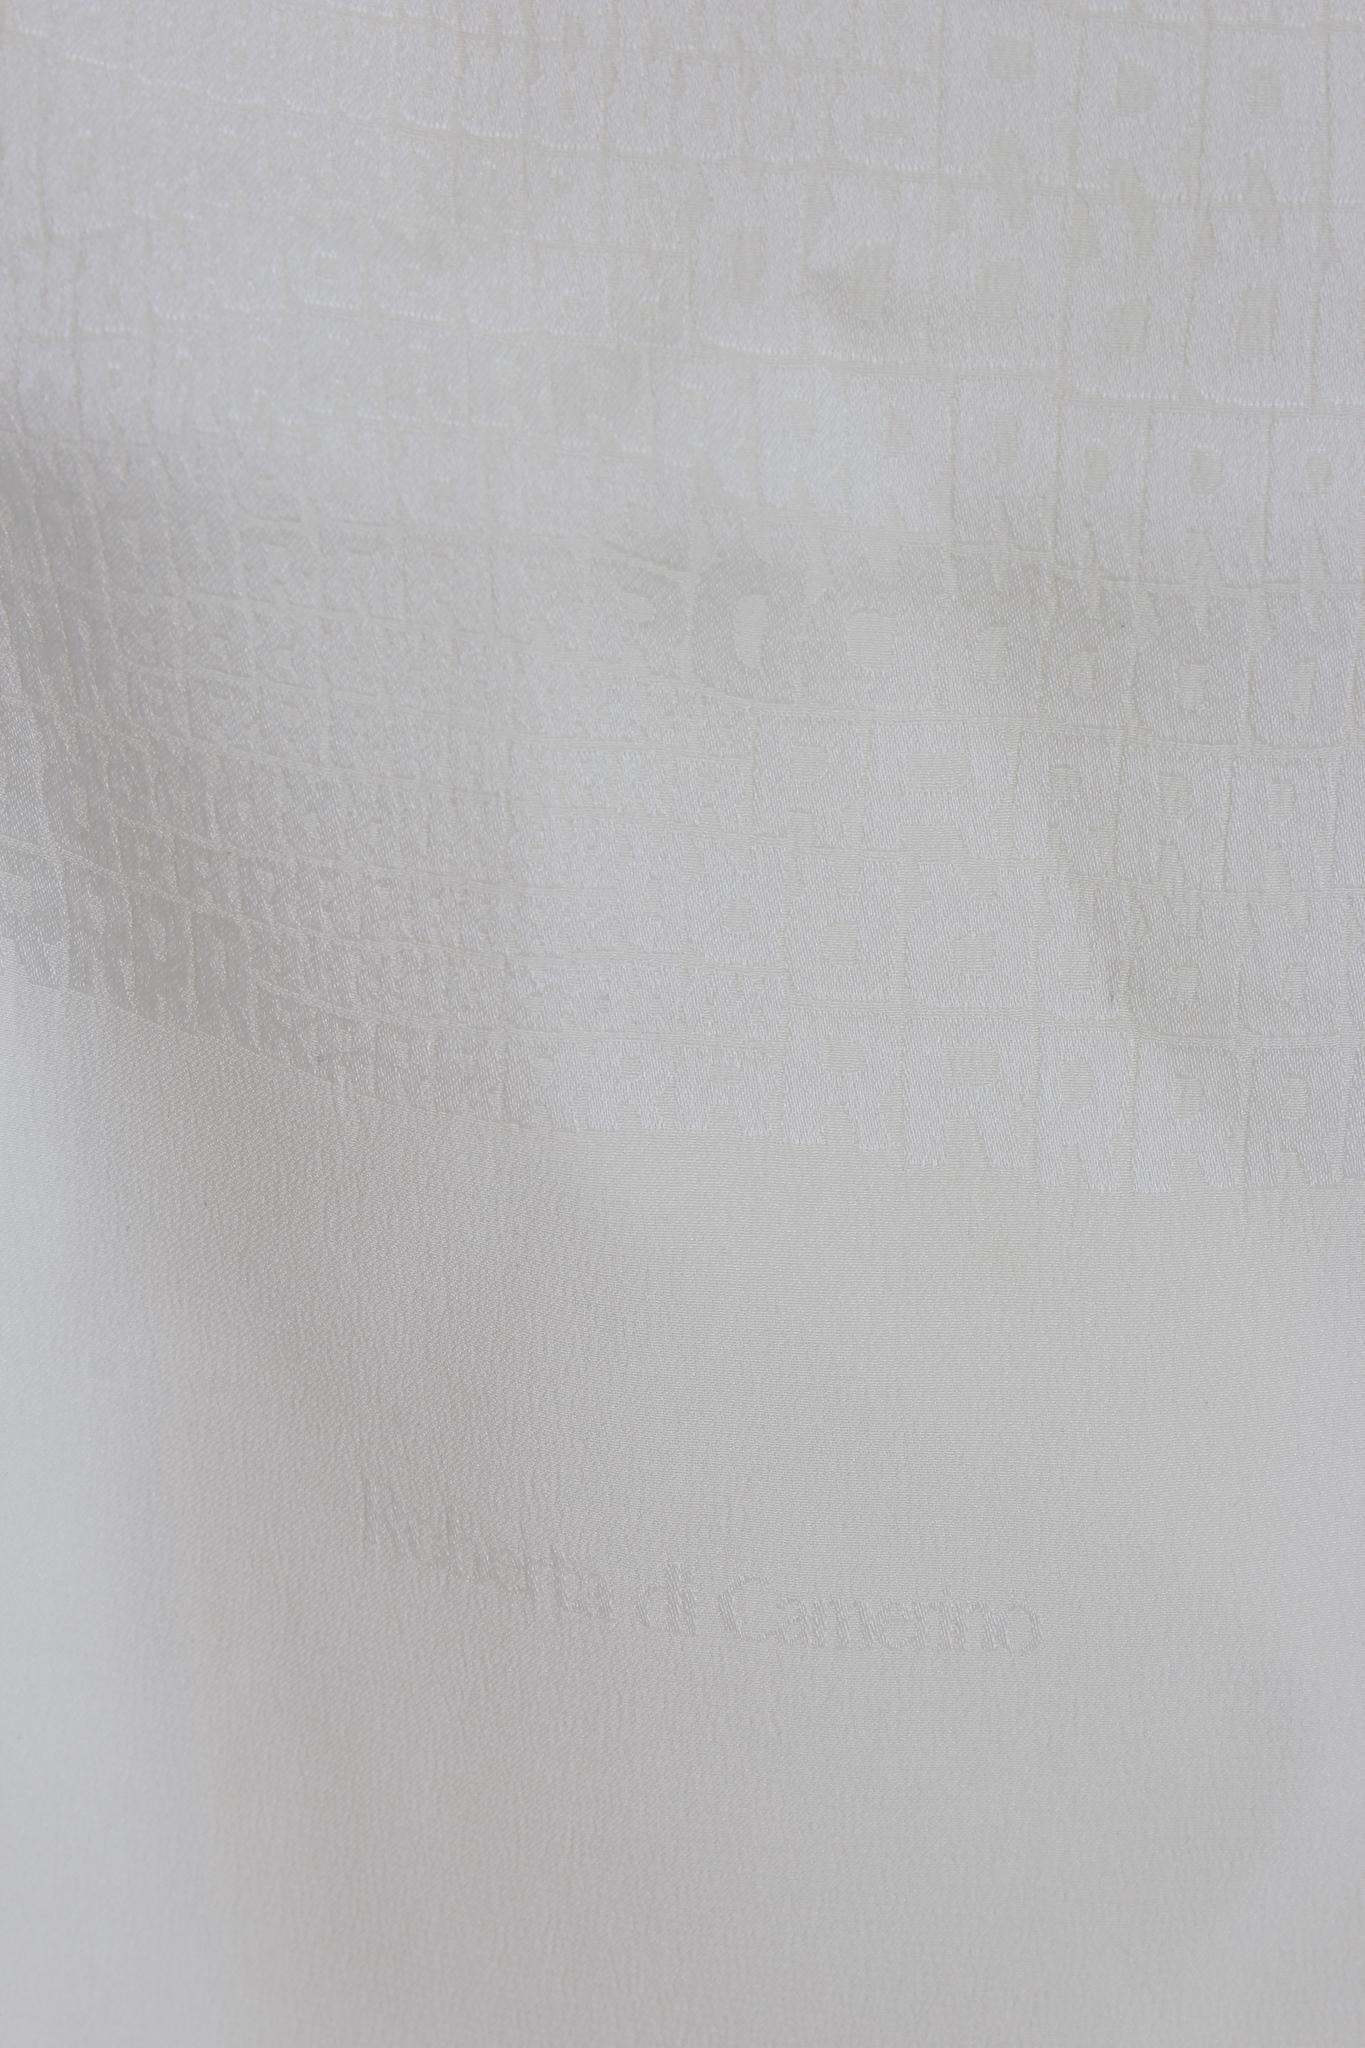 Foulard tubulaire vintage des années 90 de Roberta di Camerino. Motif monogramme ton sur ton en beige, tissu 100% soie. Fabriqué en Italie.

Dimensions : 37 x 170 cm